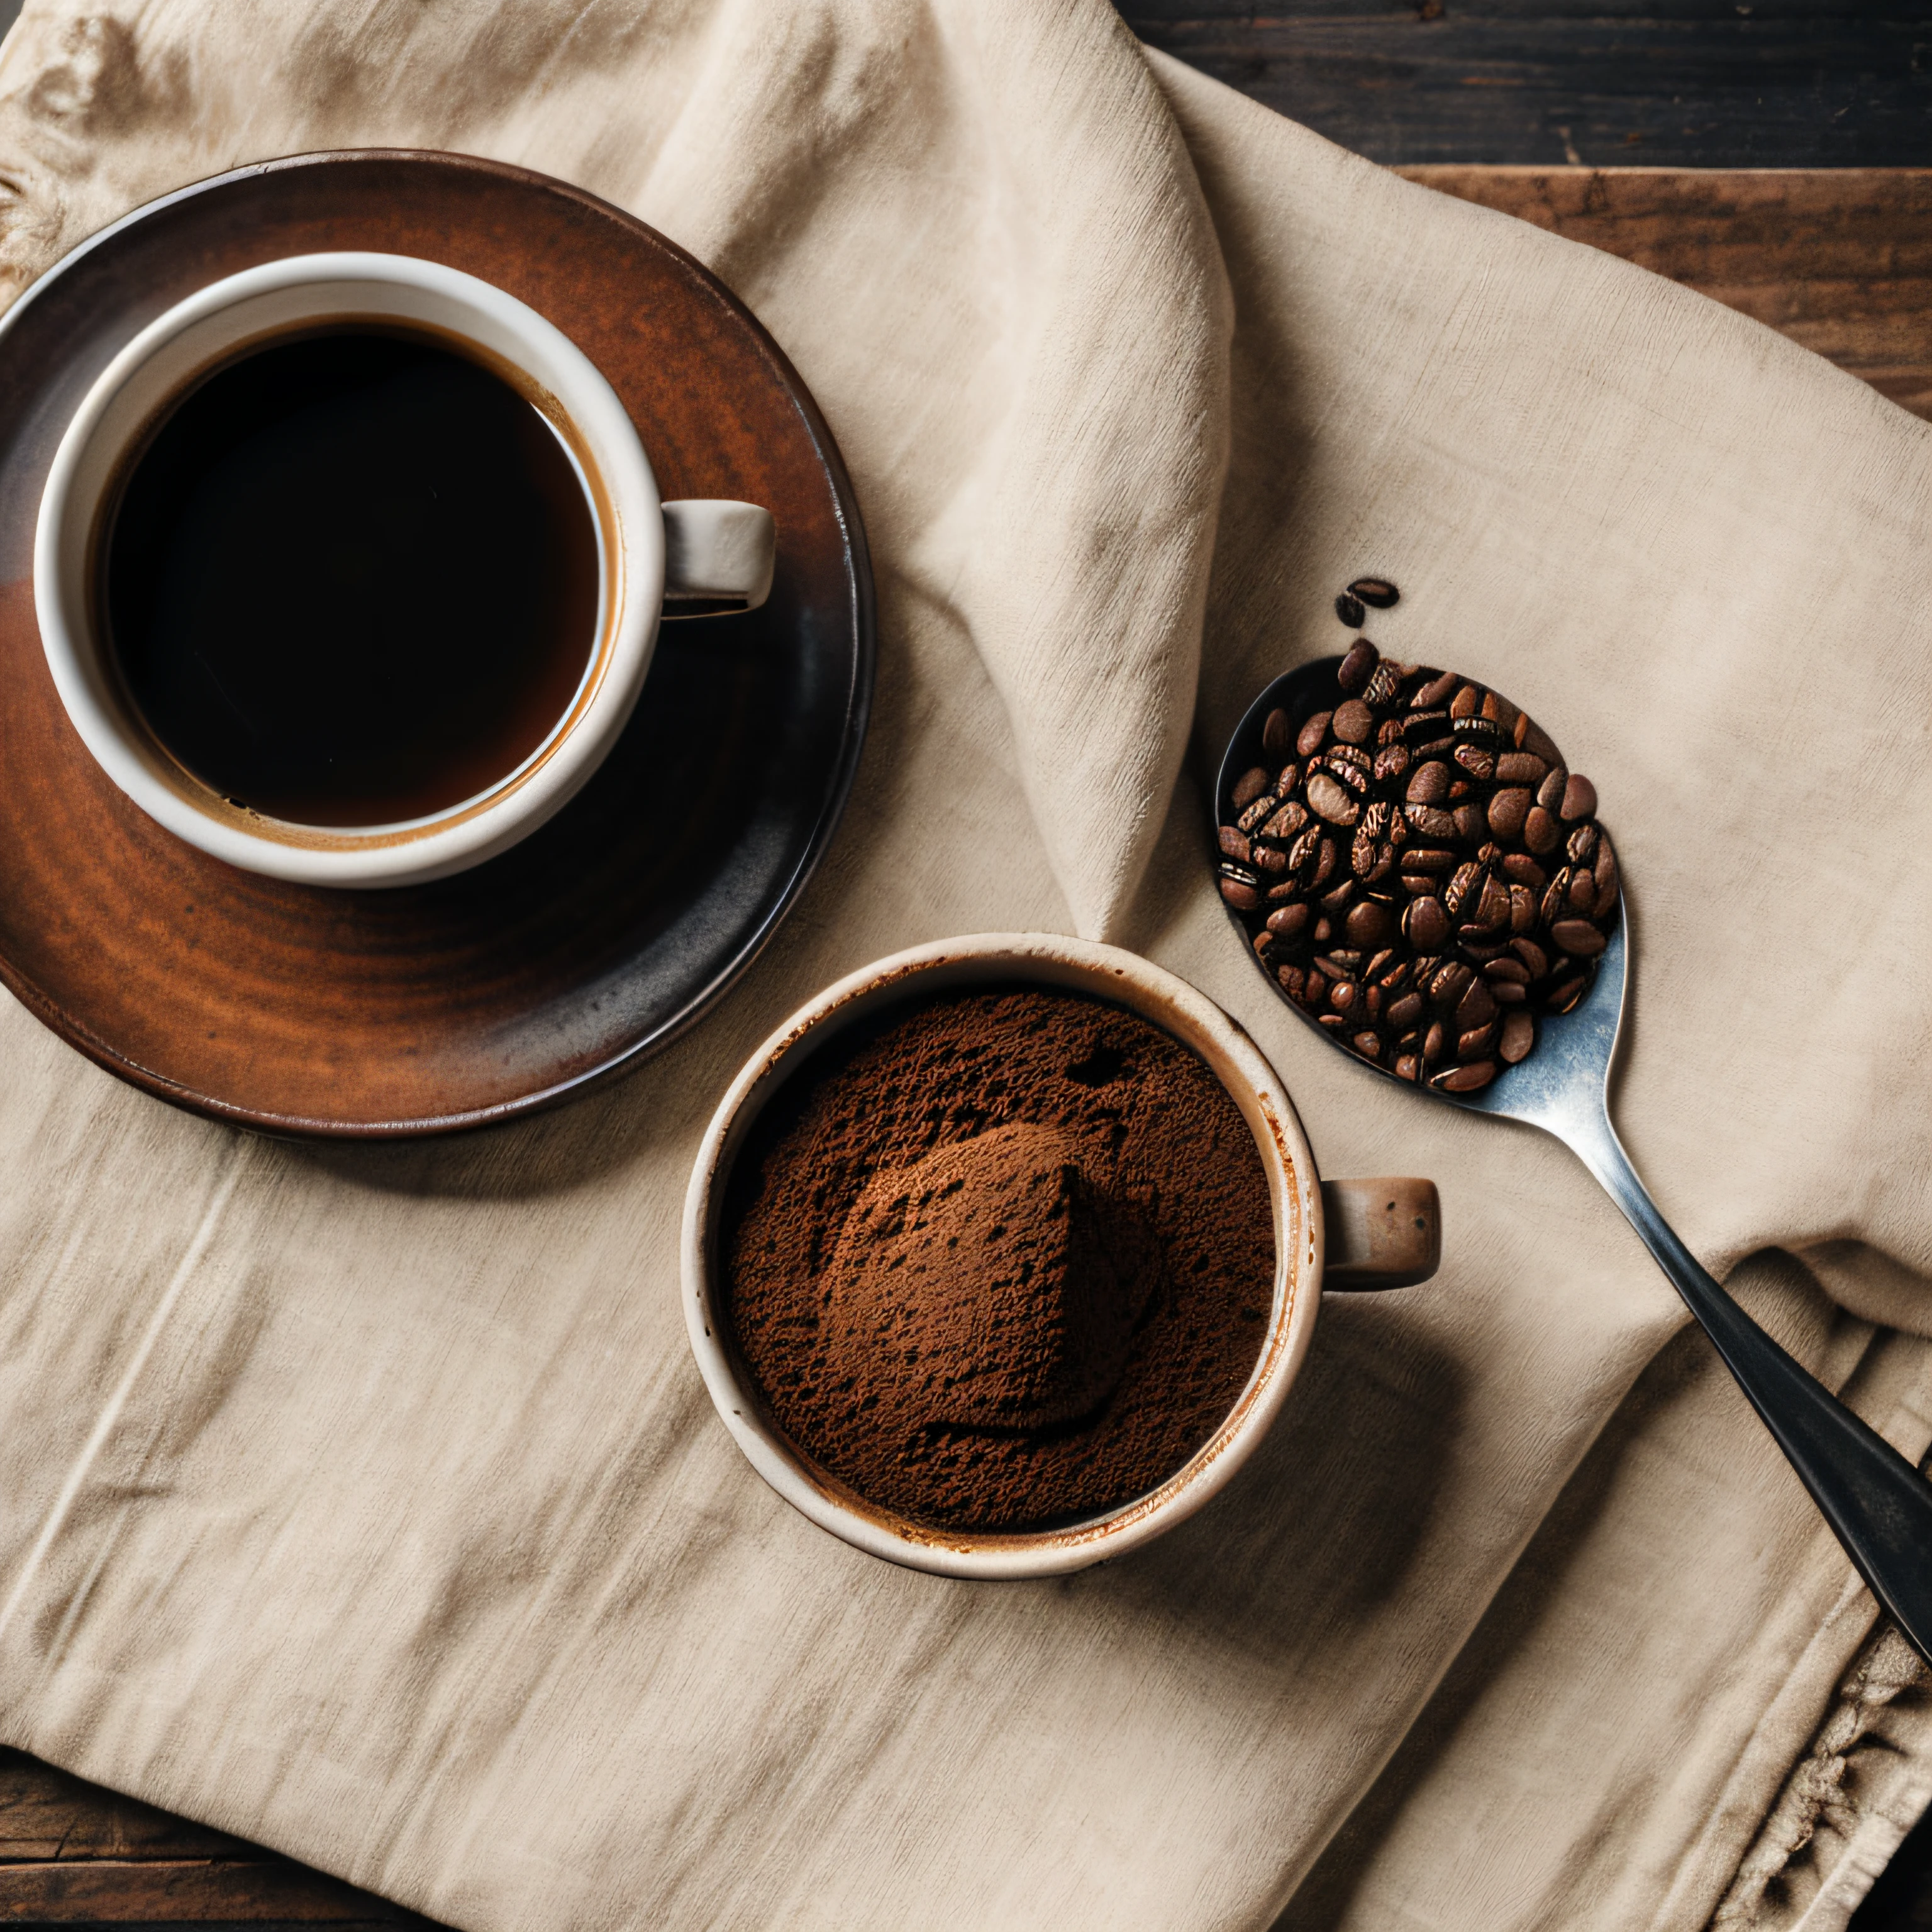 жареный кофе и зерна, выложенные на ткань с чашкой глиняного кофе, сфотографированные с помощью 35-миллиметровой ультрареалистичной макрокамеры HDR